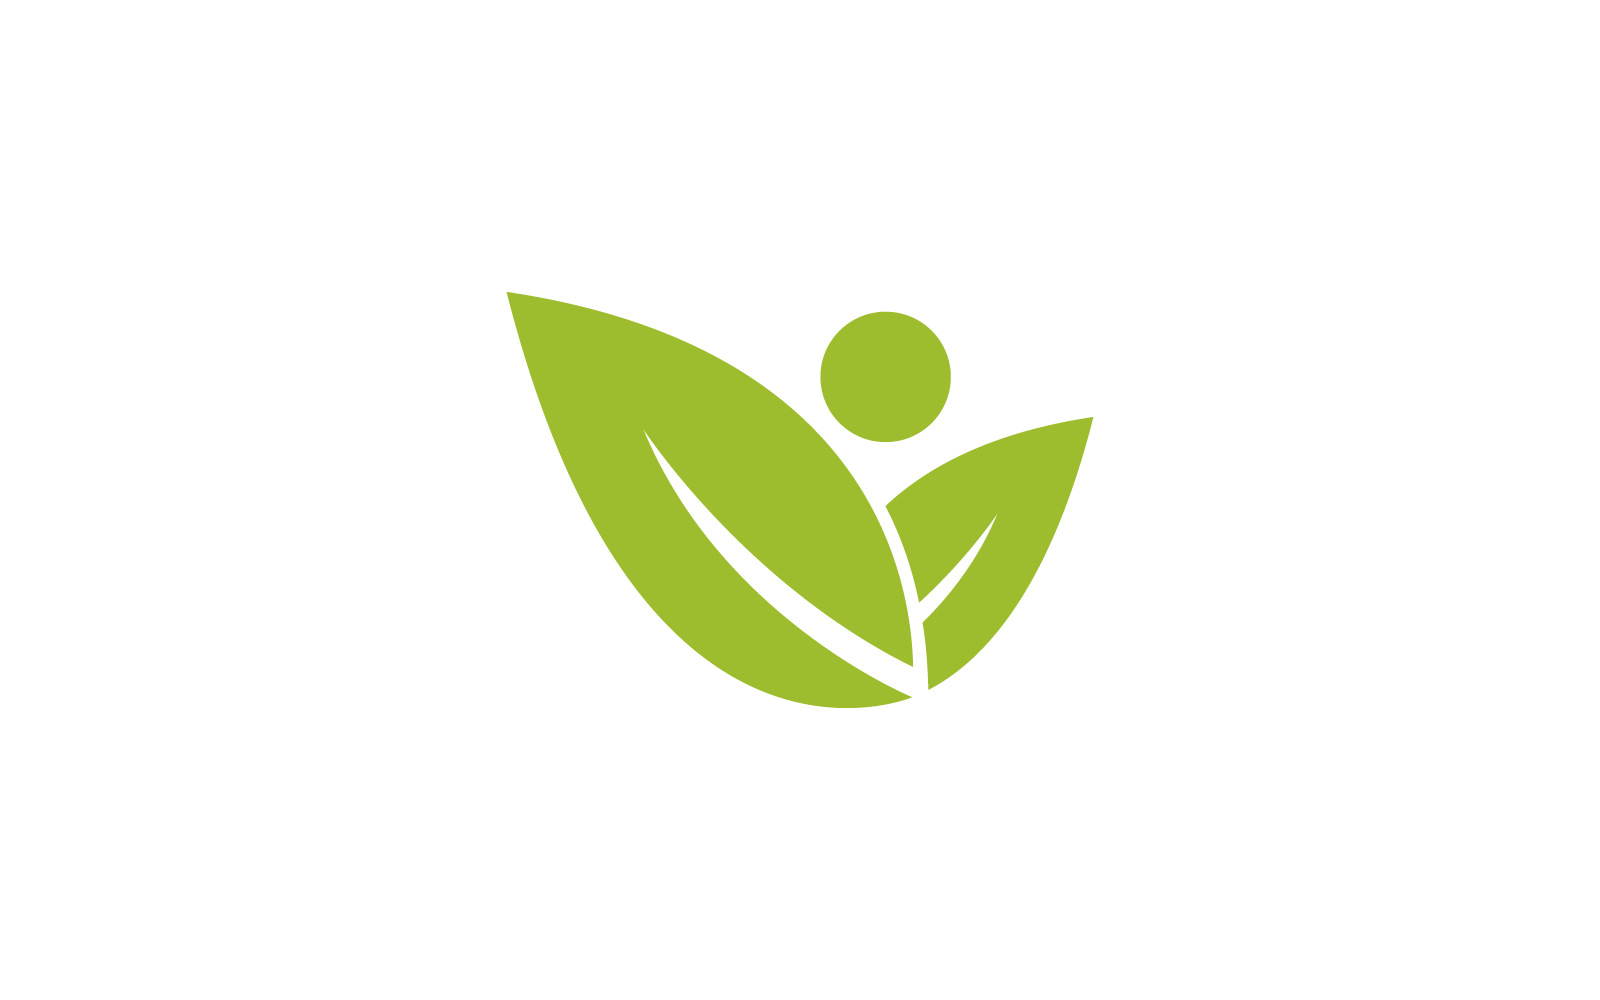 Green leaf nature illustration  logo design